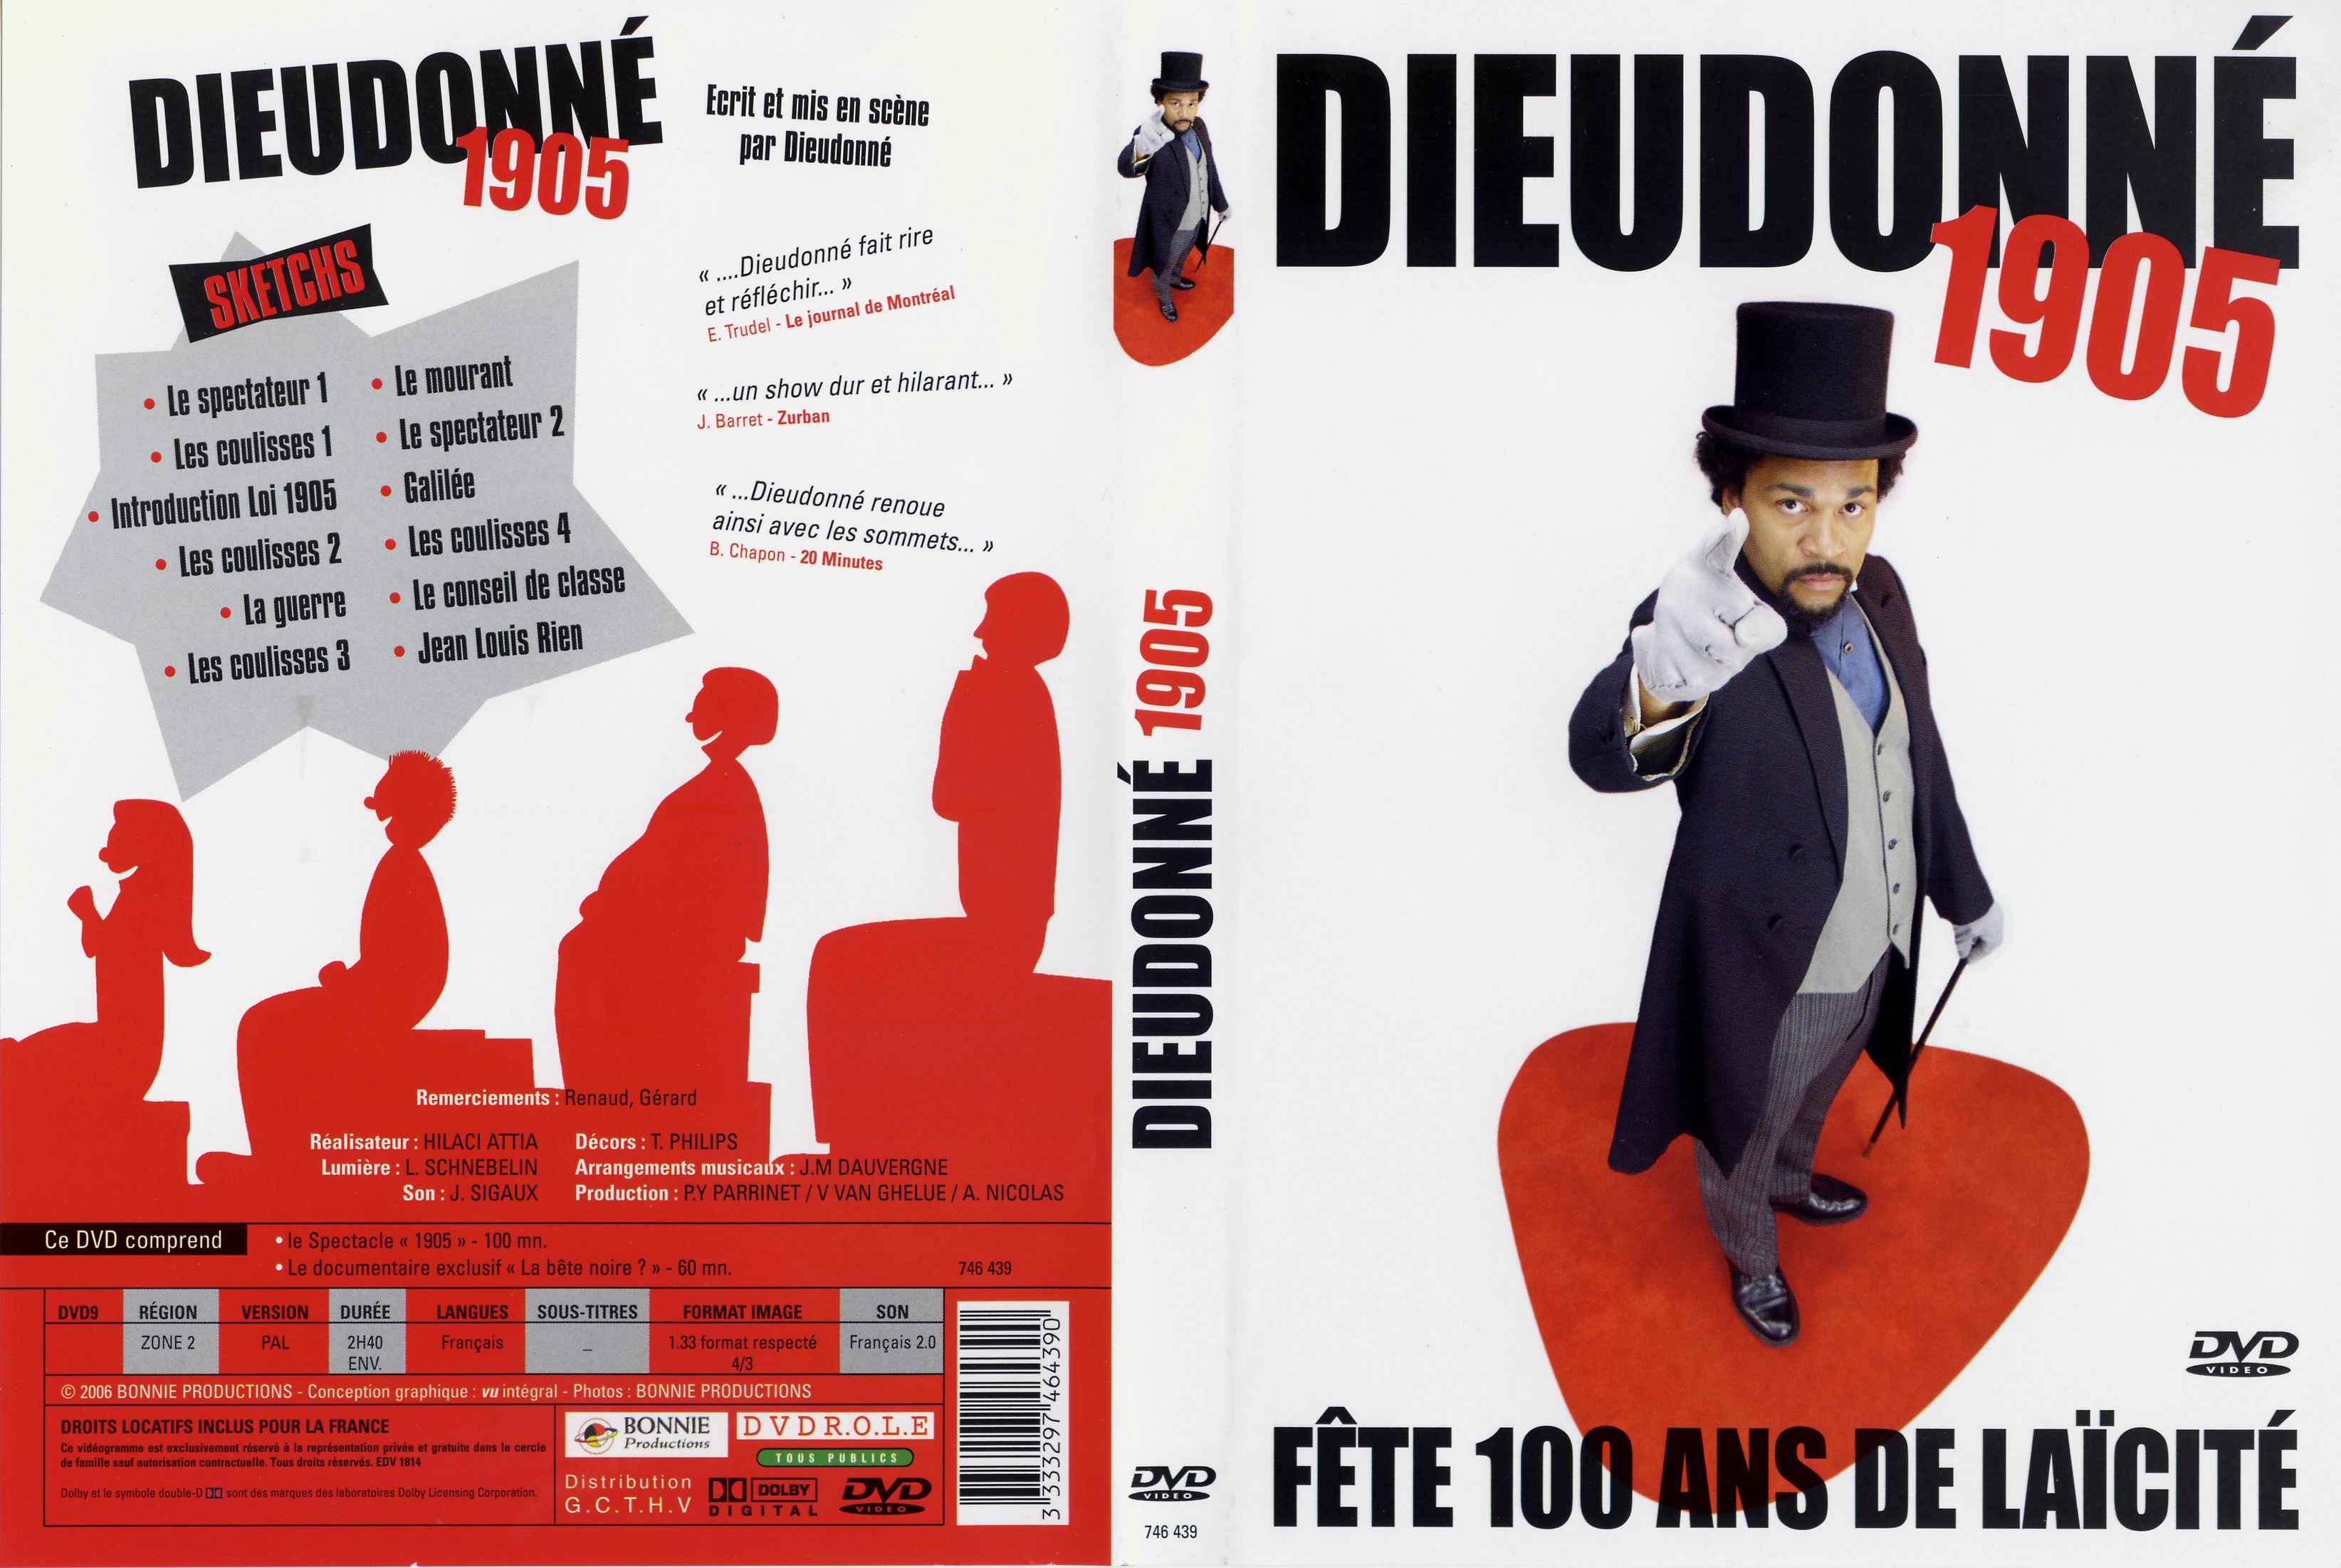 Jaquette DVD Dieudonne 1905